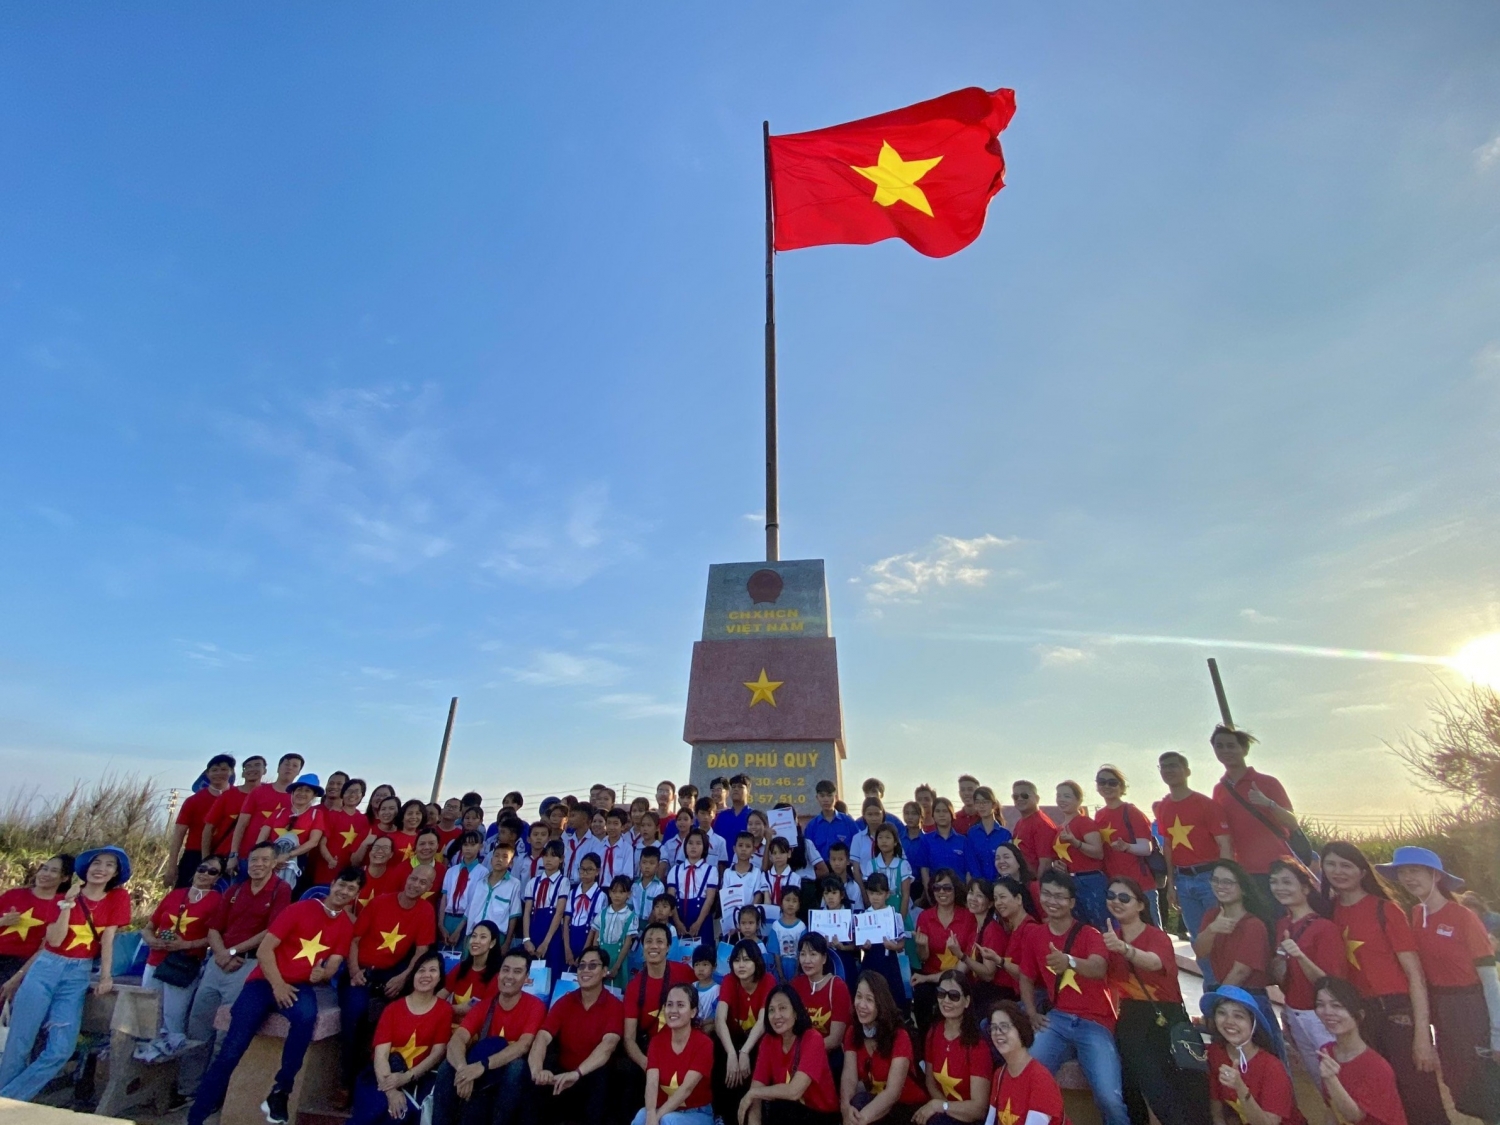 Phối hợp cùng Ban nữ công và HCCB Vietsovpetrp tổ chức chương trình biển đảo tại Phú Quý - Bình Thuận